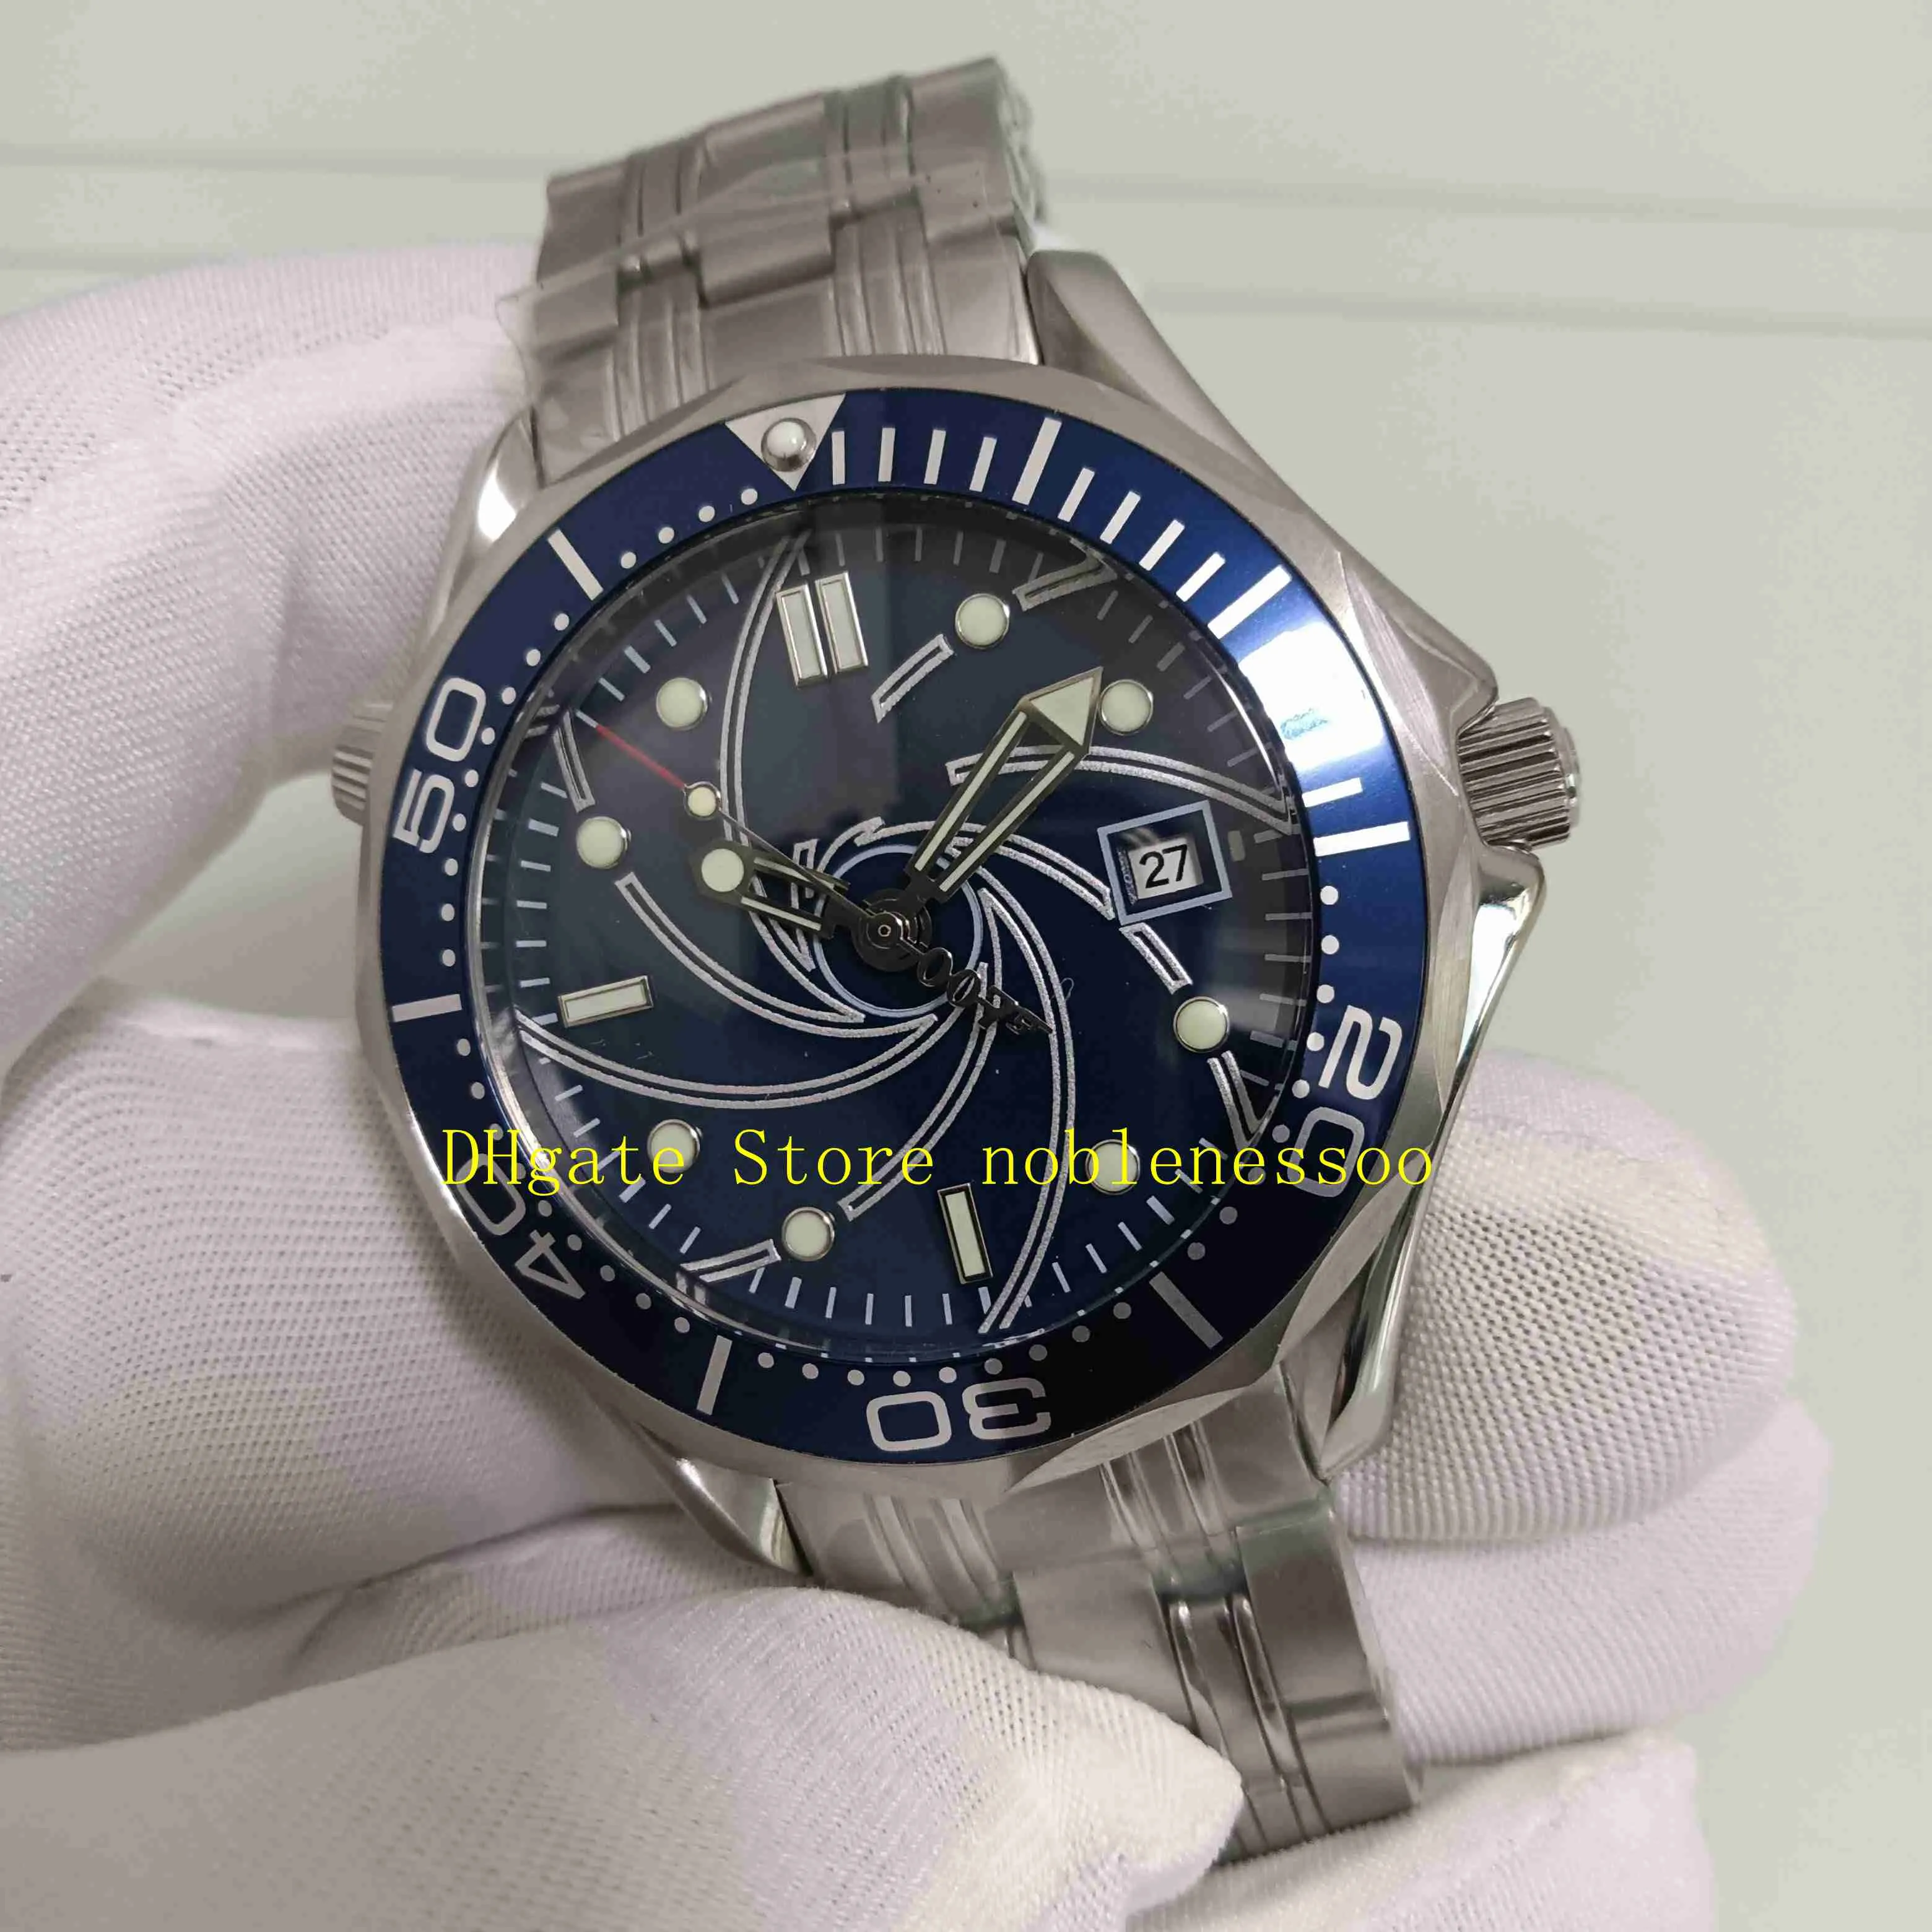 Real Po – montre automatique James Bond 007 pour hommes, cadran bleu, acier inoxydable, Casino Royale, édition limitée, Bracelet 41mm, Mec221q